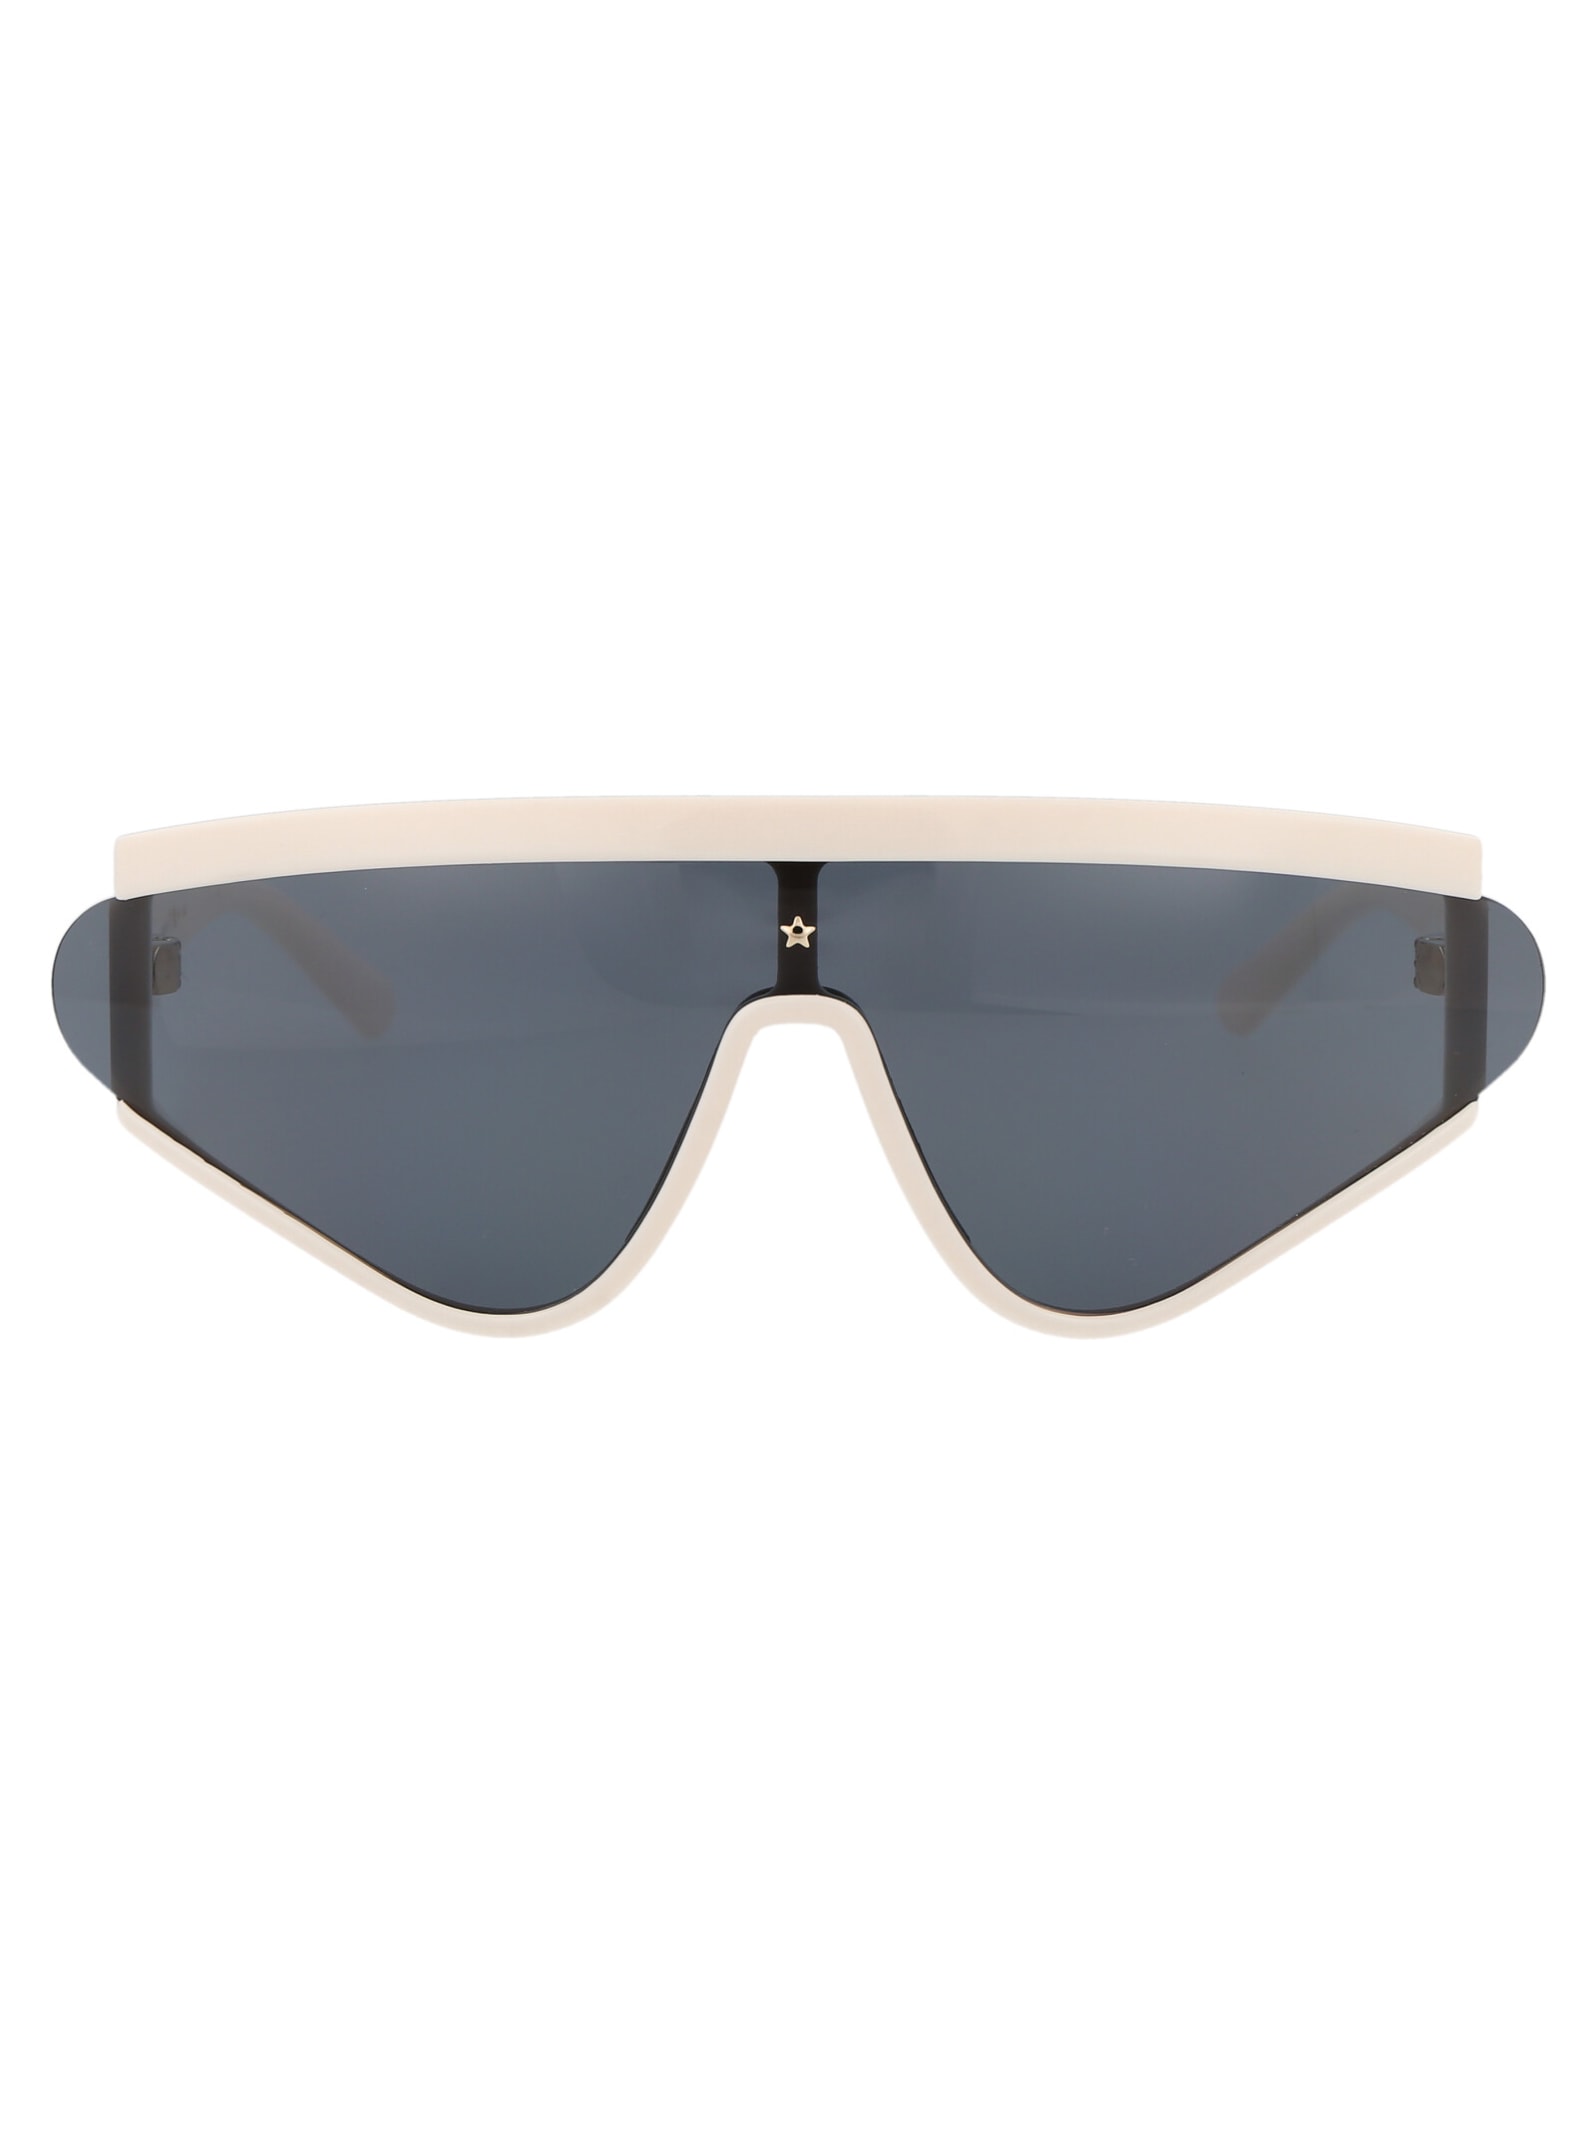 Cf 7021/s Sunglasses